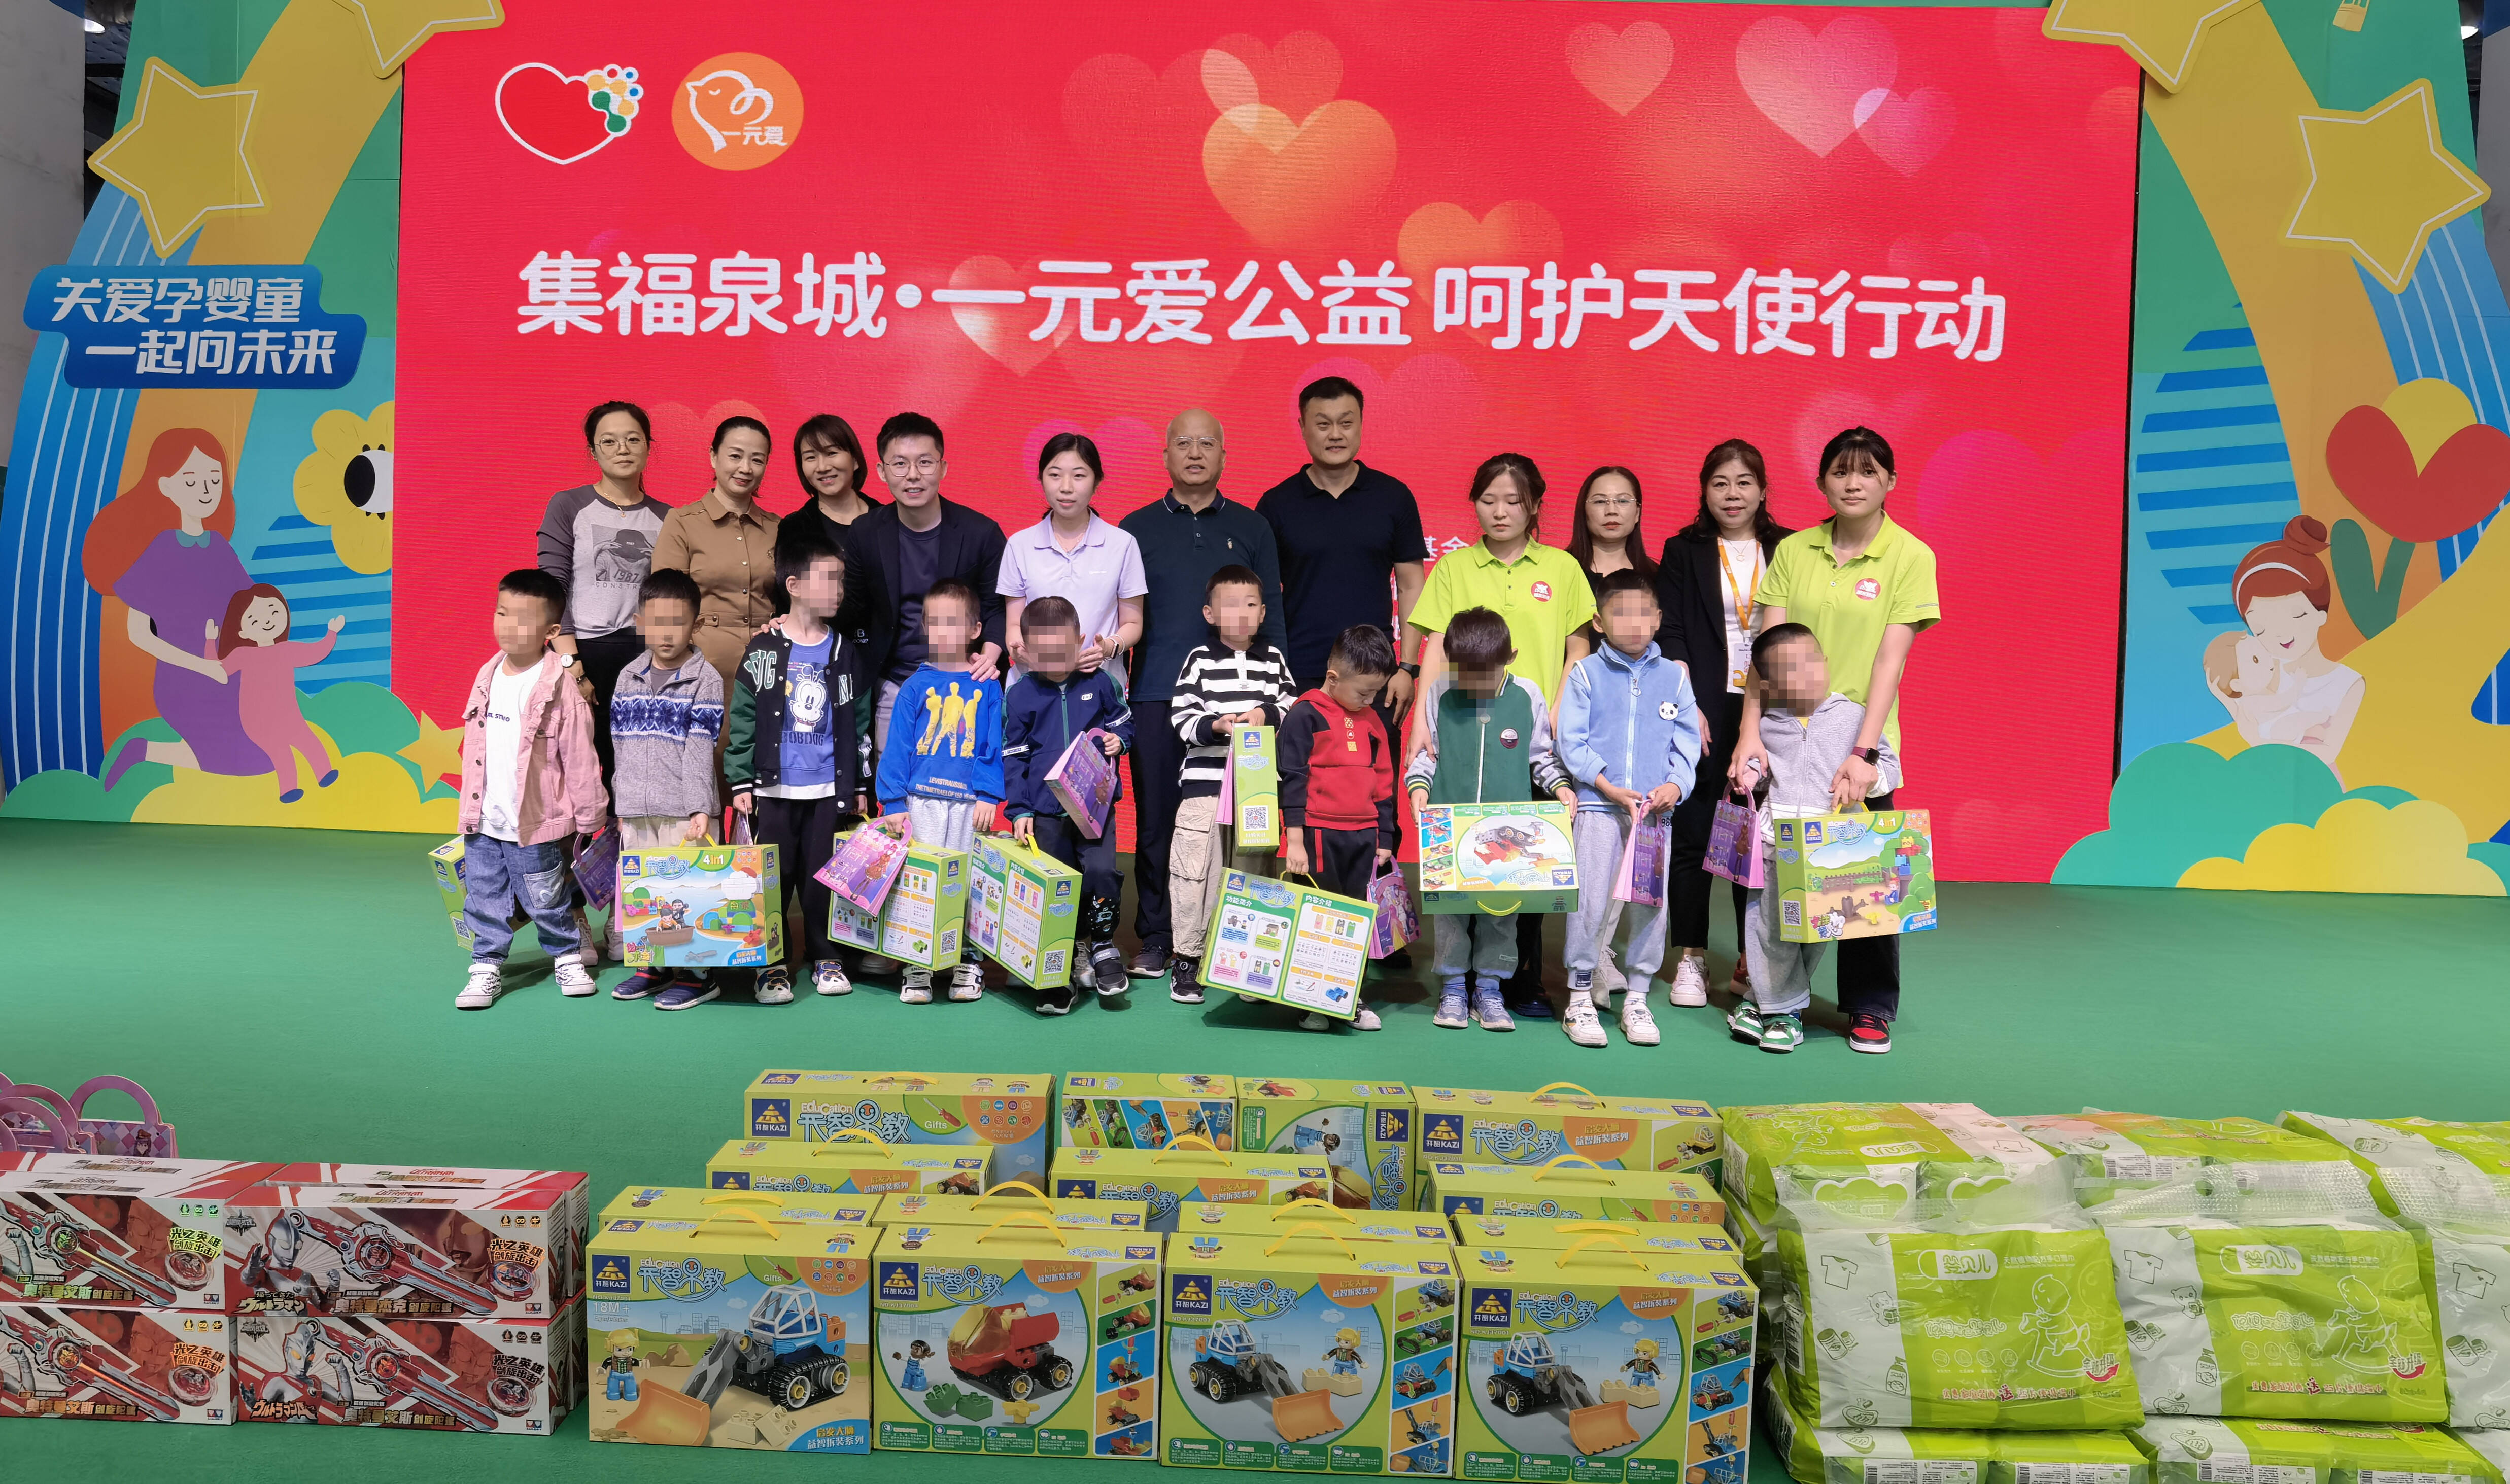 济南市残疾人福利基金会举办“集福泉城·一元爱公益 呵护天使行动” 爱心捐赠活动